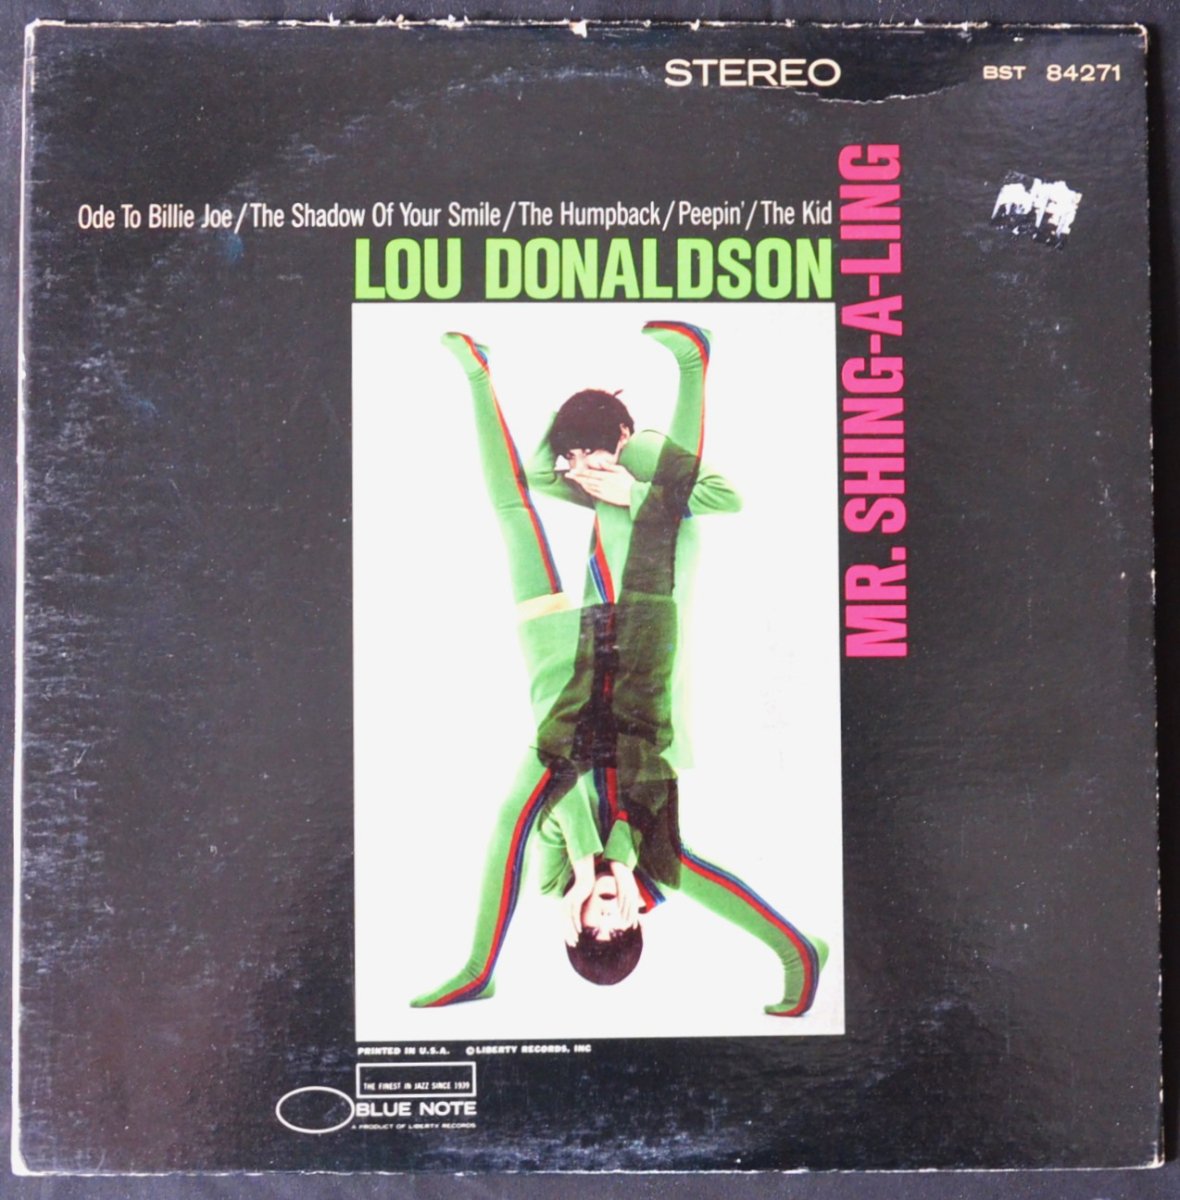 LOU DONALDSON / MR. SHING-A-LING (LP)